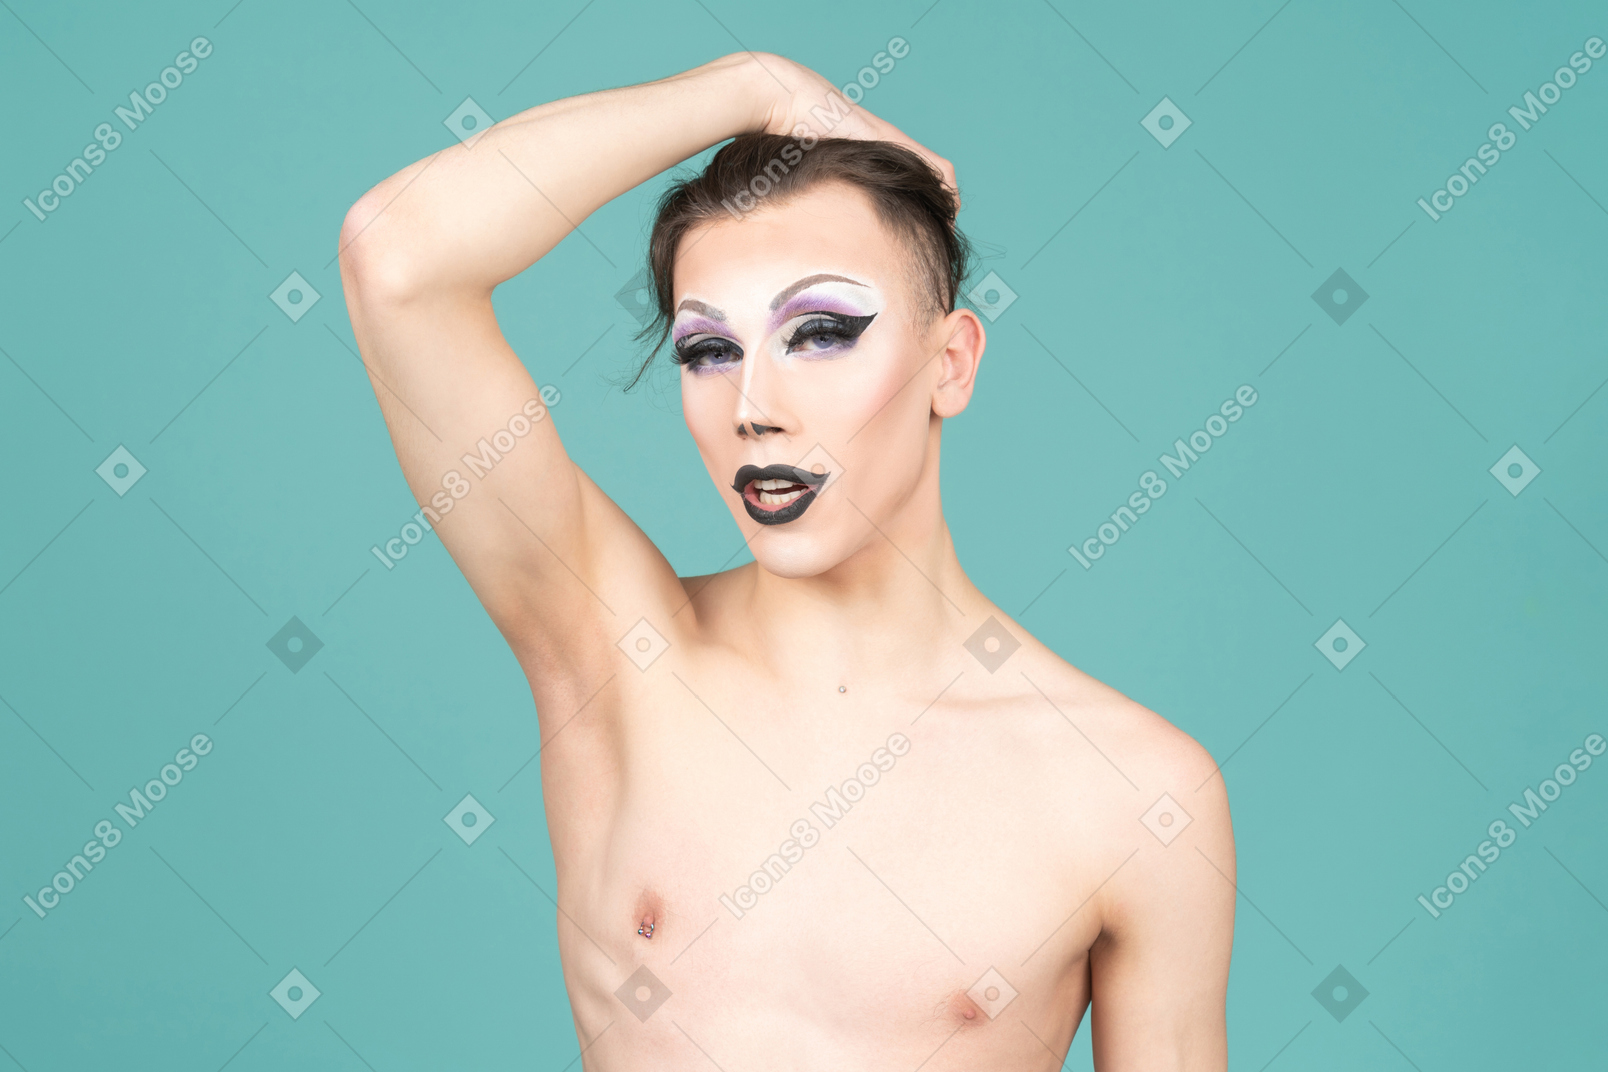 Трансвестит кладет руку на макушку